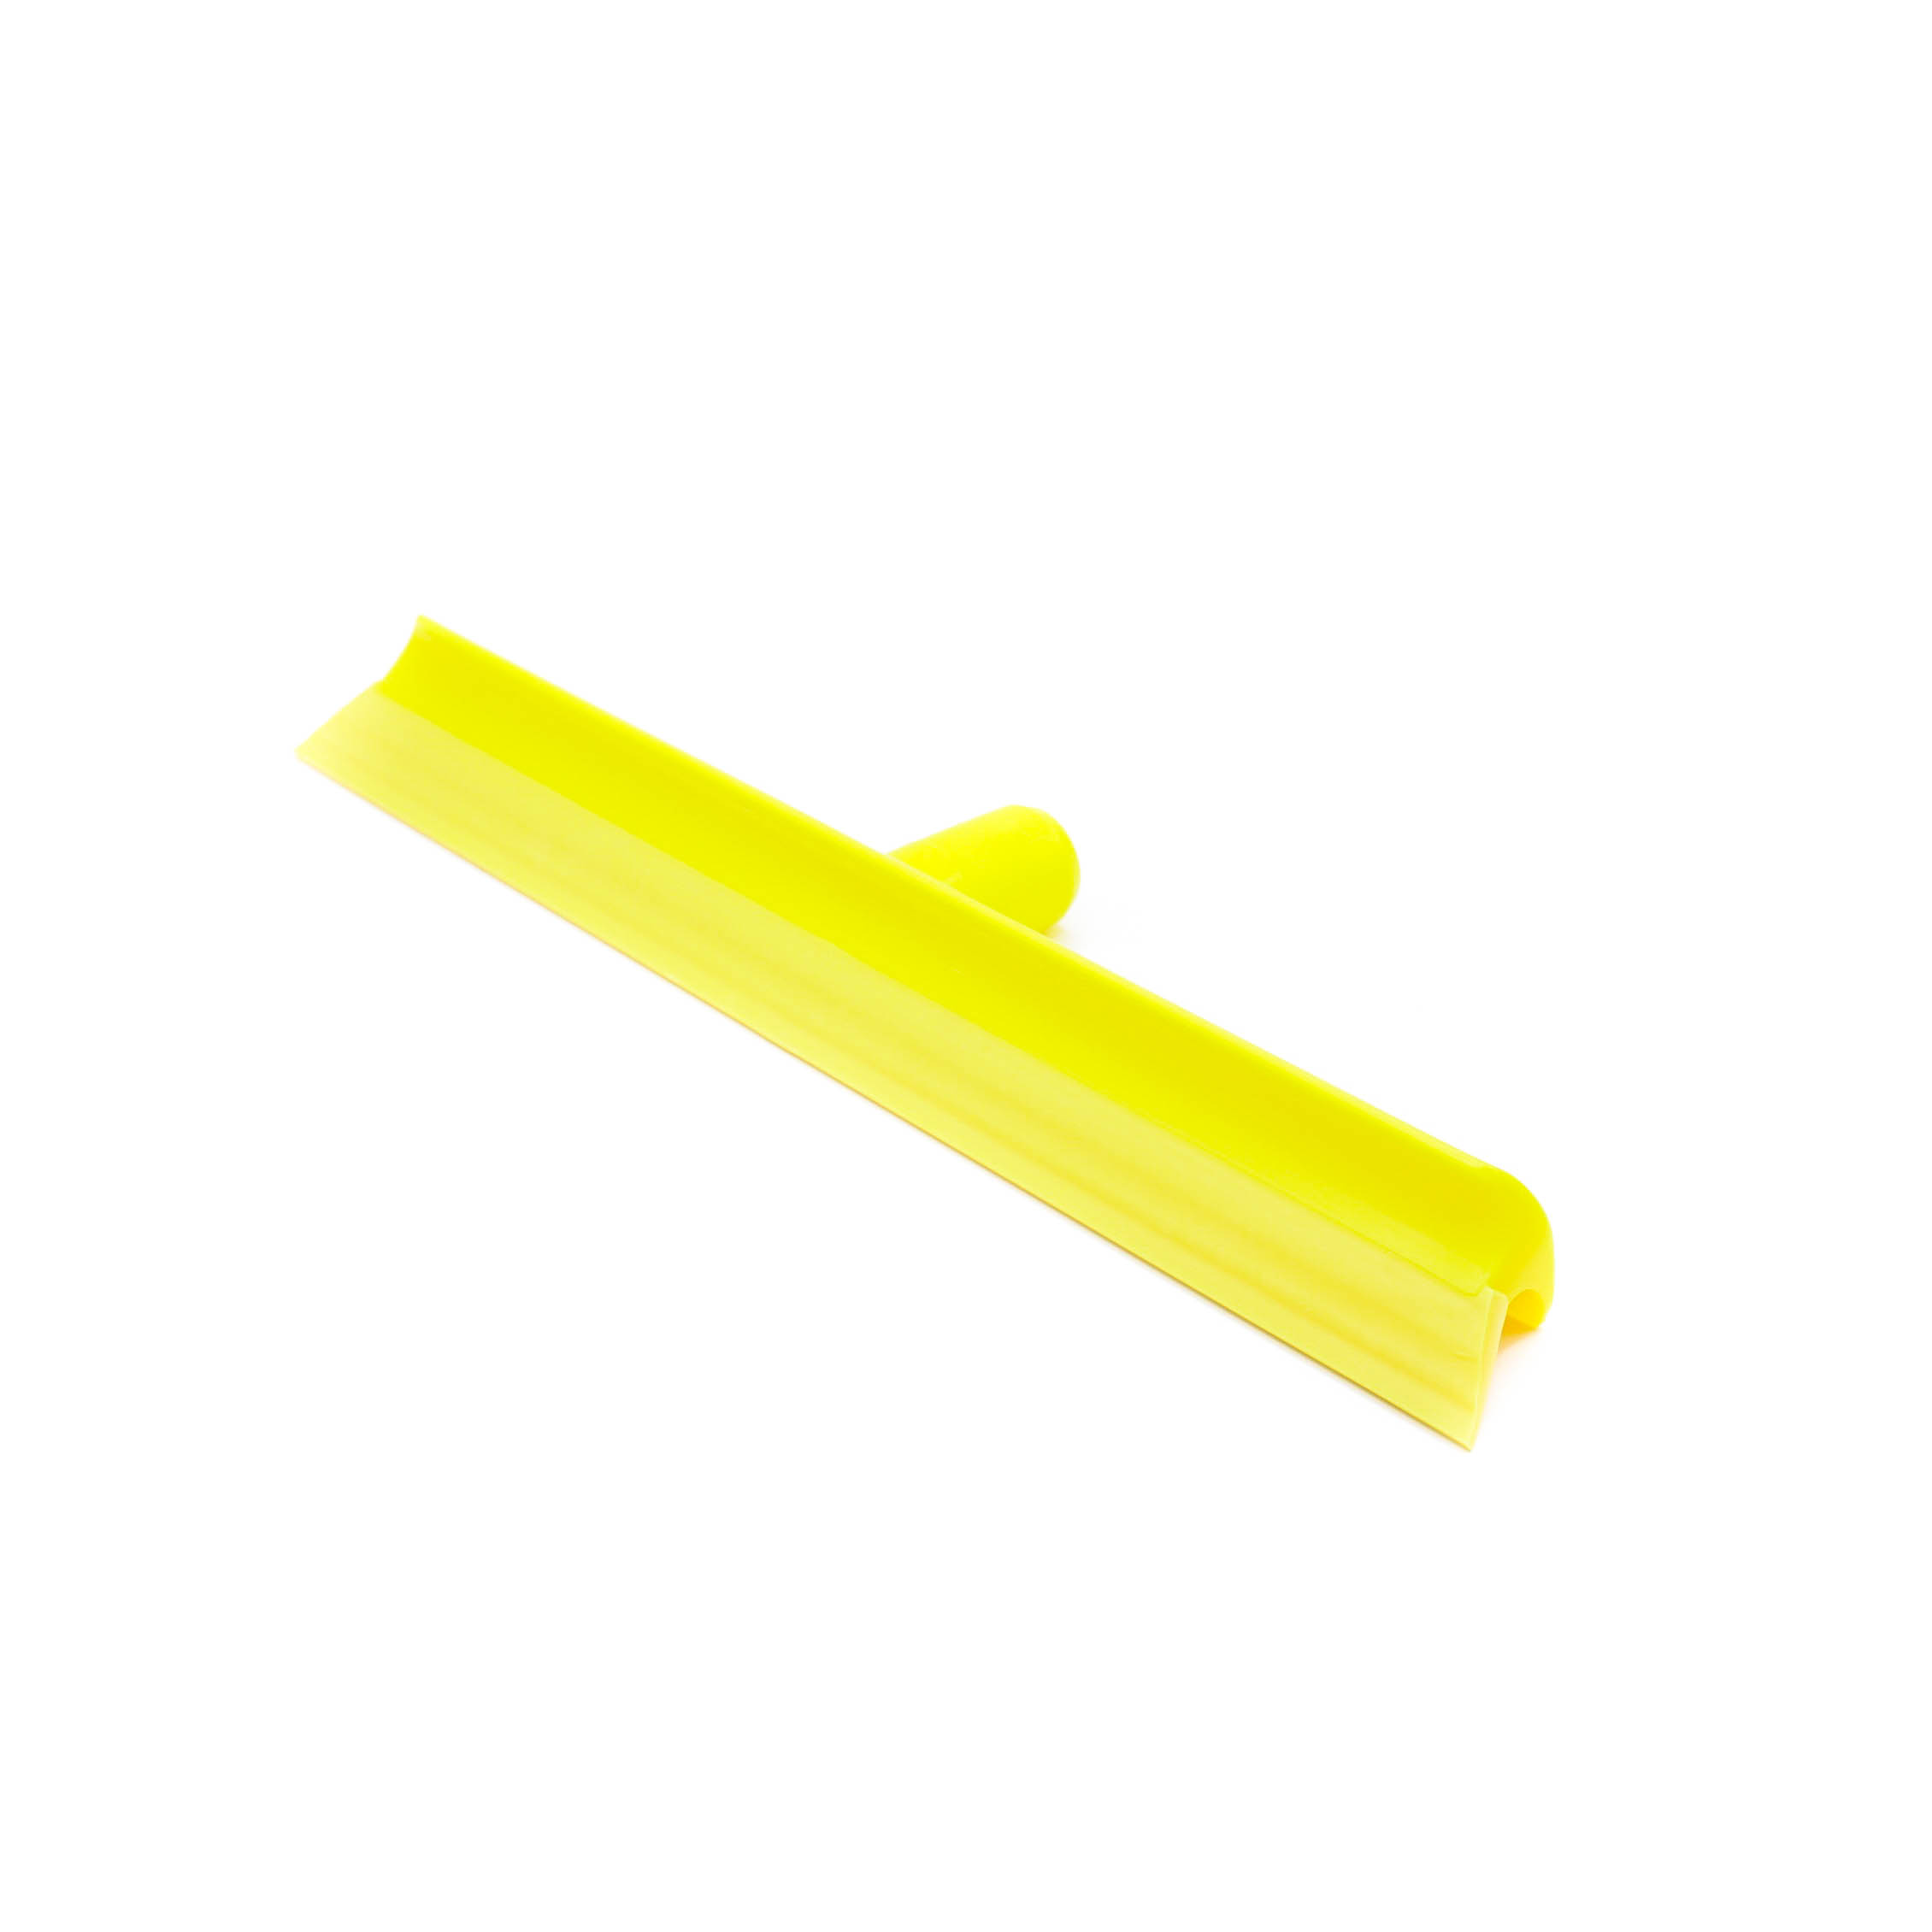 Сгон для пола с одинарной пластиной 400мм желтый (артикул производителя 28400-4)